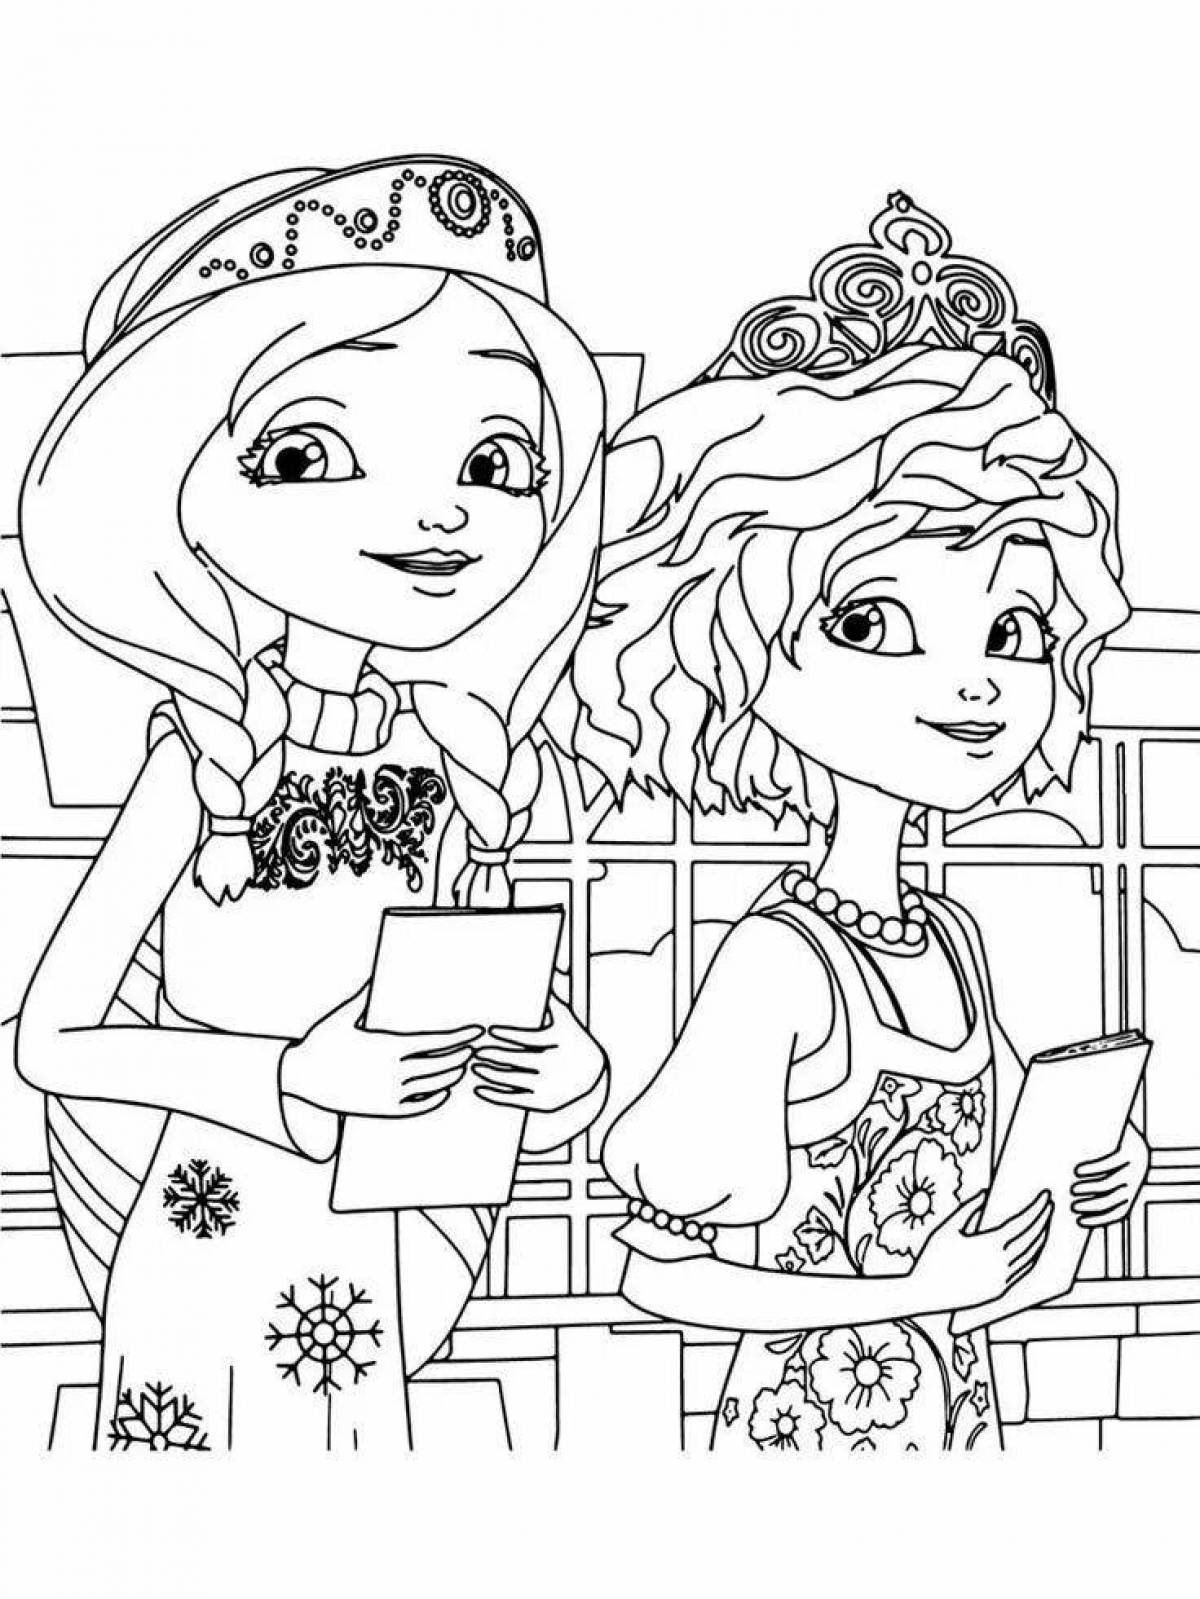 Яркая раскраска для девочек 5-6 лет из мультфильмов